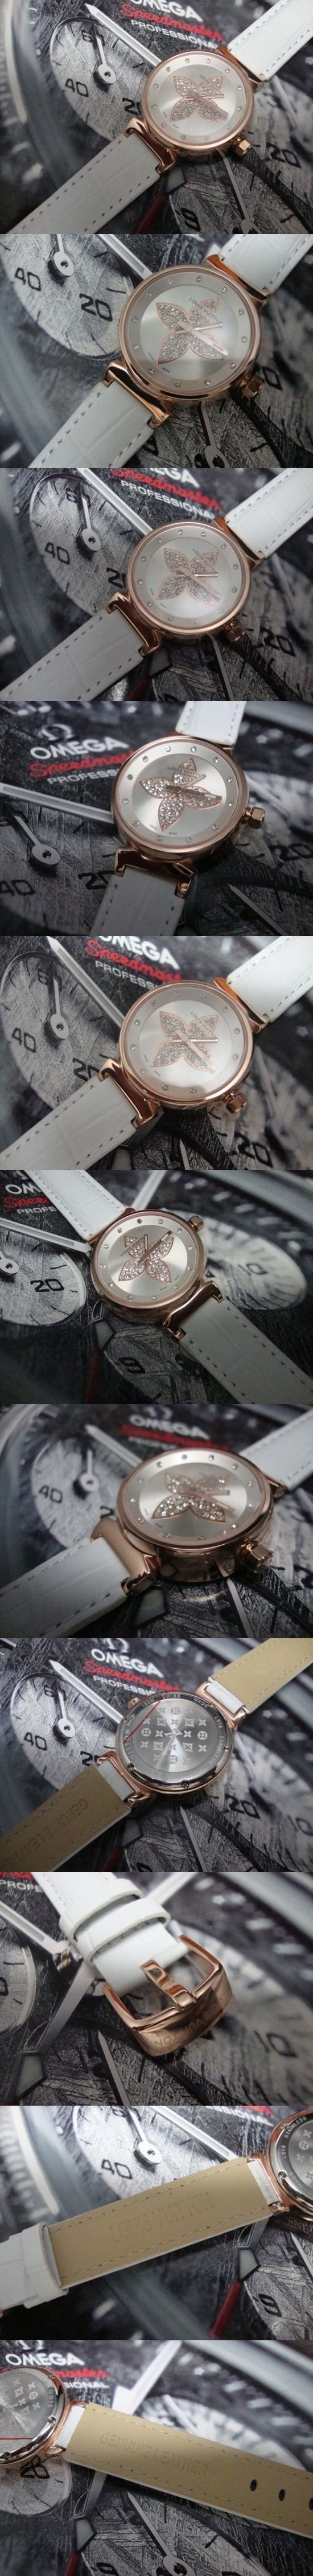 おしゃれなブランド時計がLOUIS-VUITTON-ルイヴィトン腕時計 ルイヴィトン 男/女性用腕時計 LOUIS-VUITTON-N-008Aを提供します.